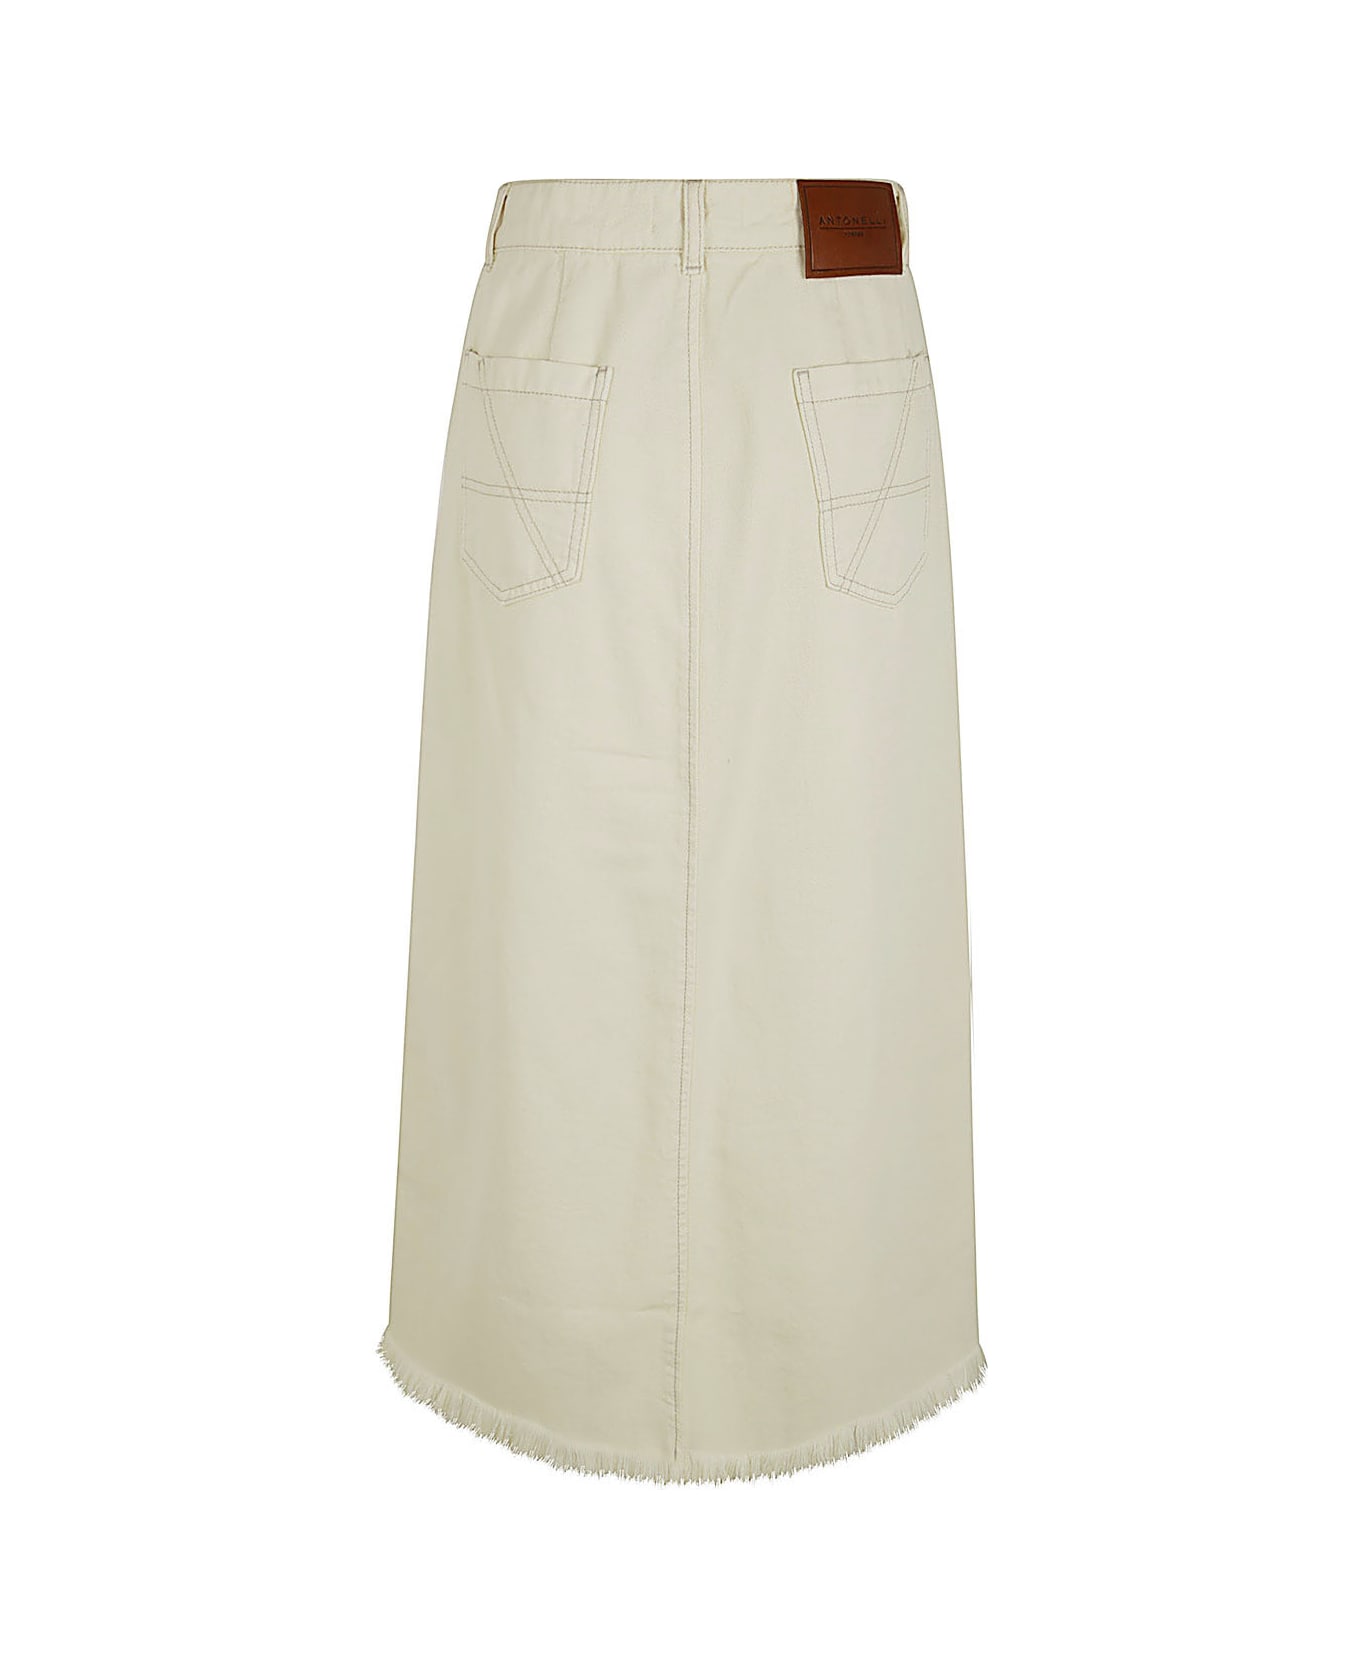 Antonelli Iago Denim Skirt With Slit - Cream